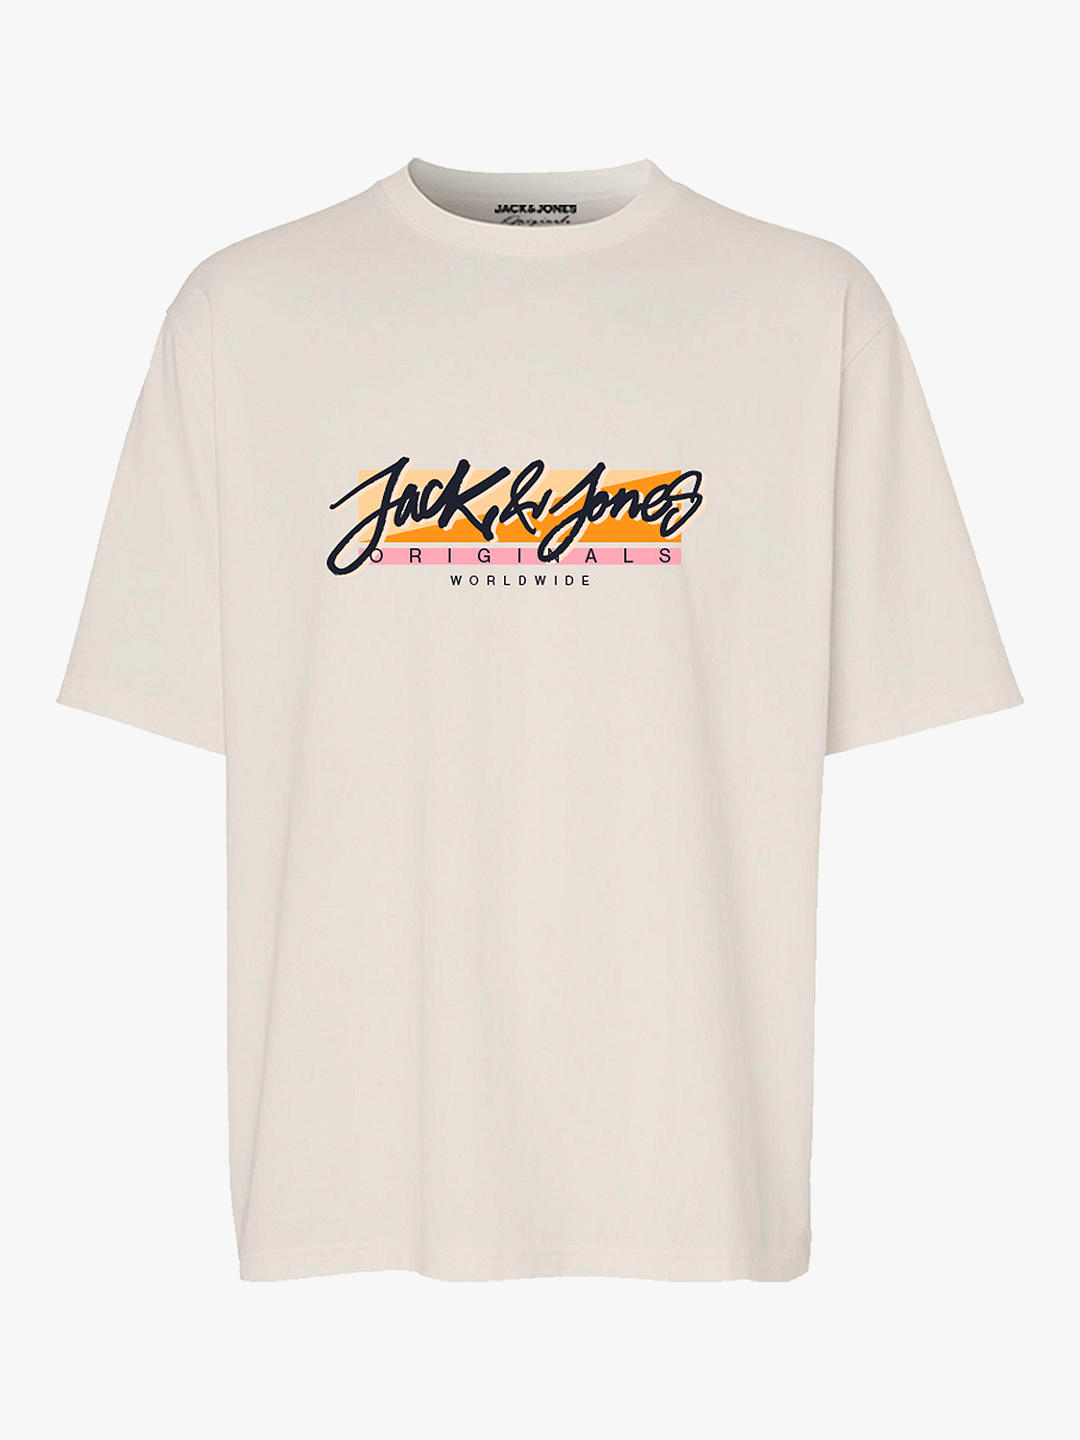 Jack & Jones Kids' Fastrunner 1 Logo T-Shirt, Buttercream